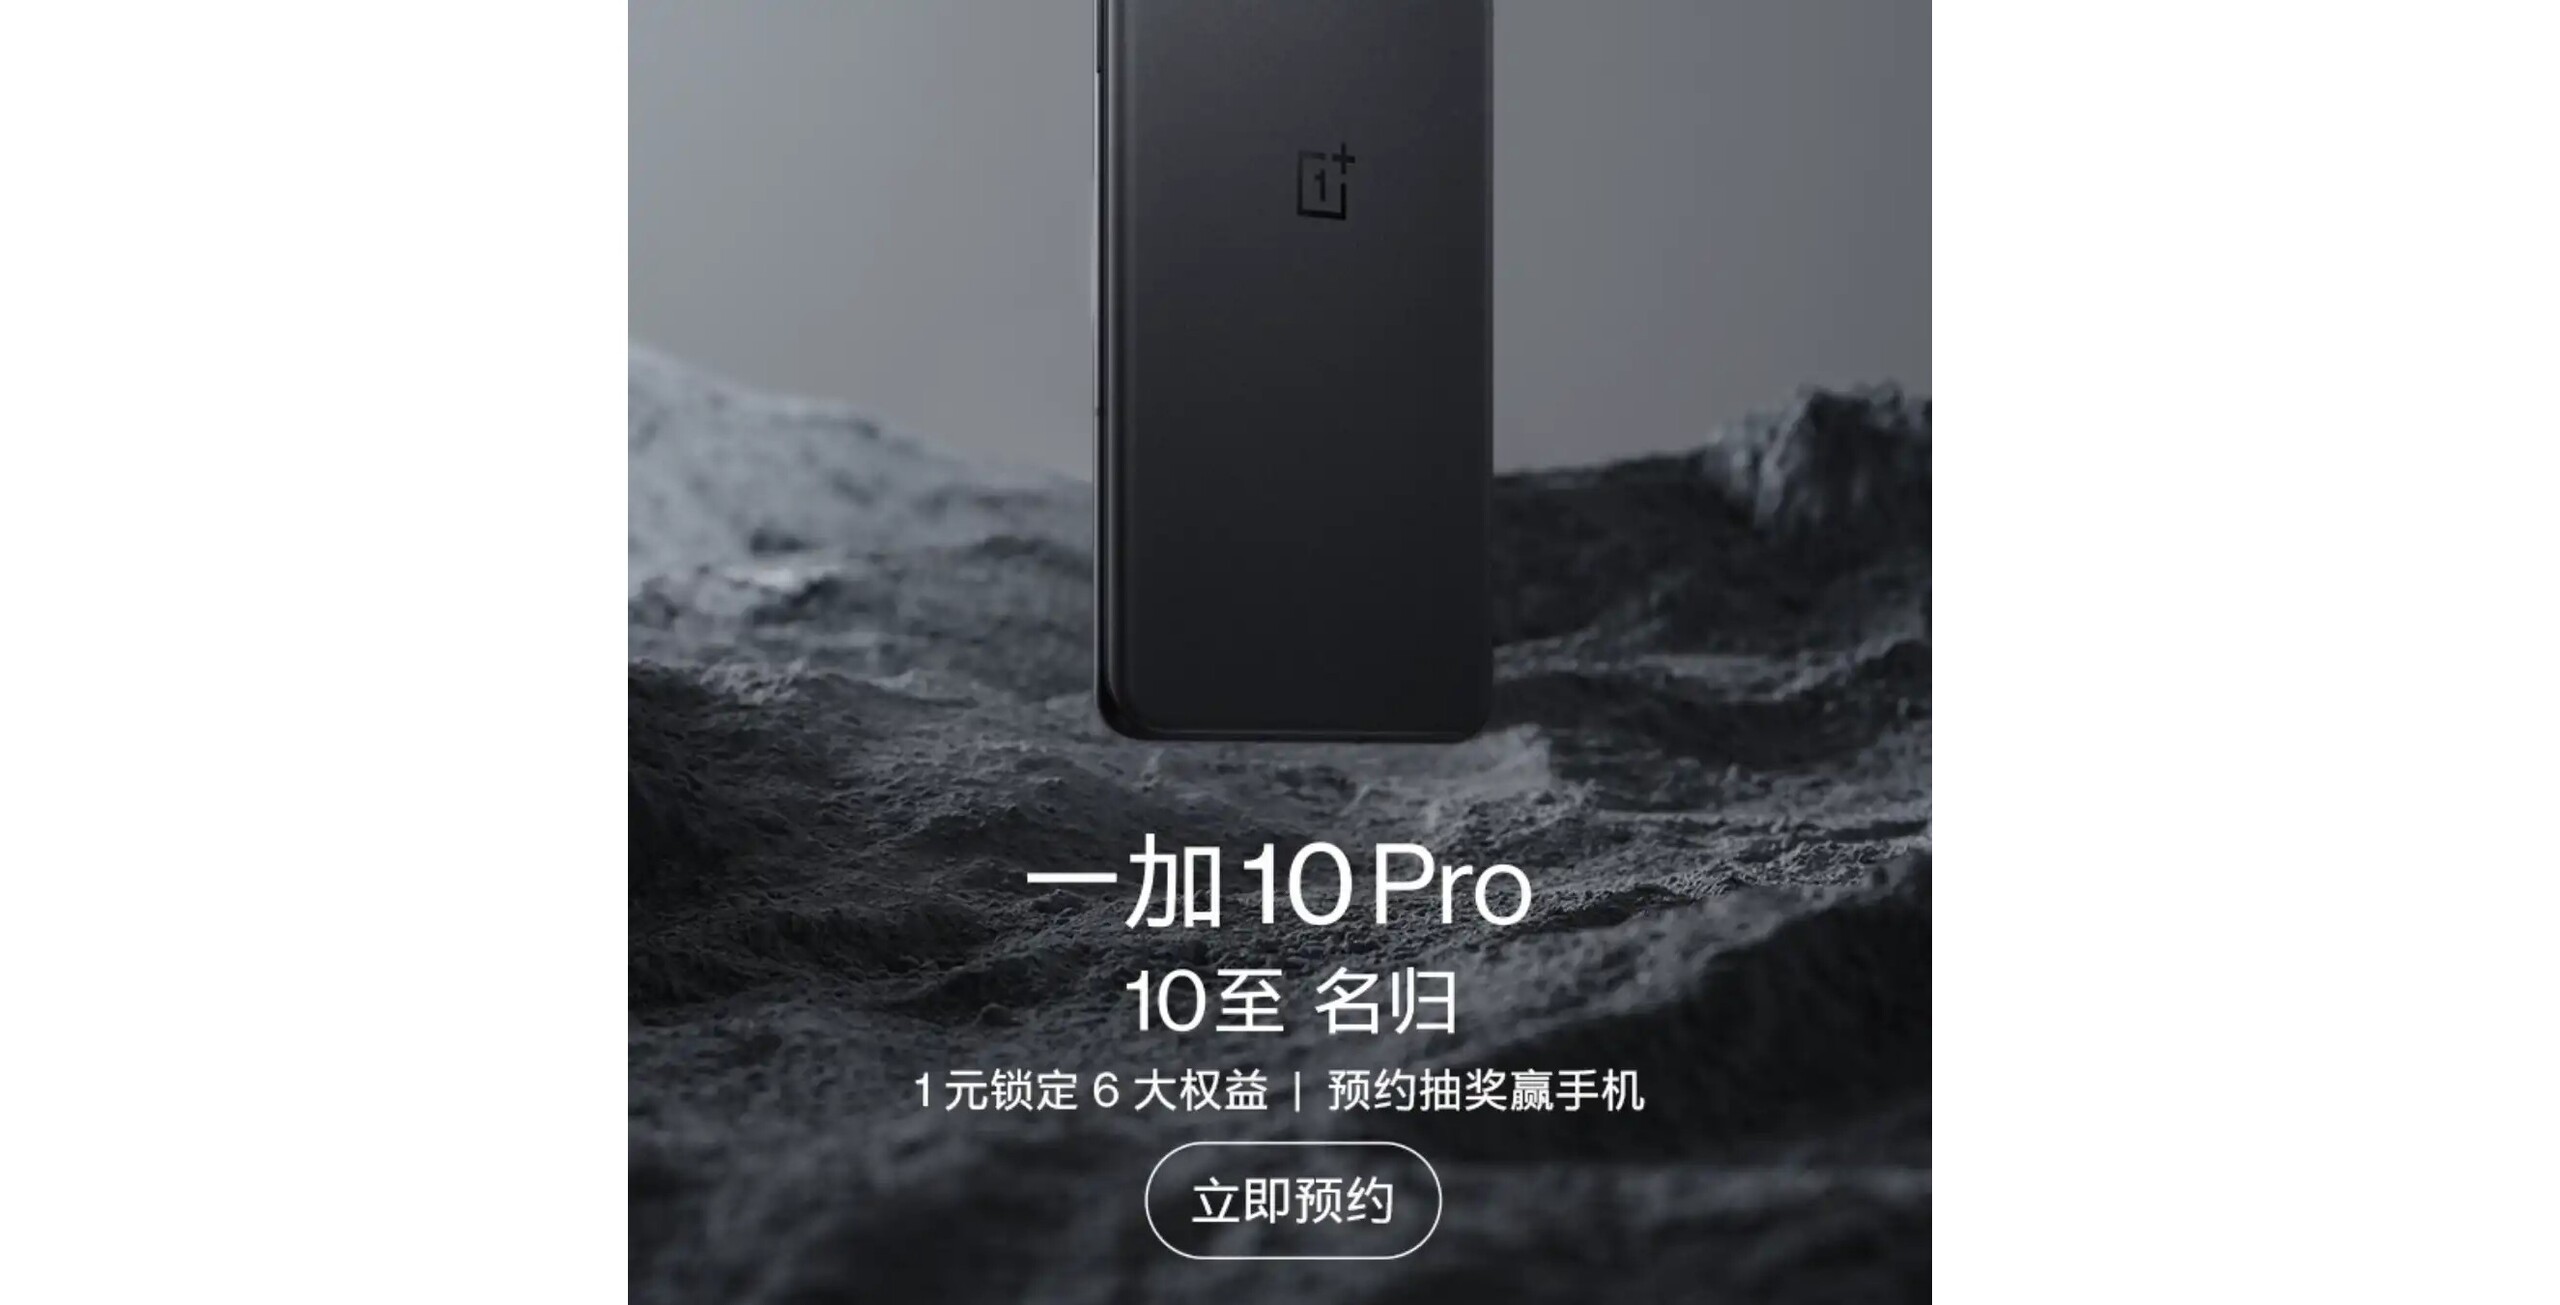 ONEPLUS 10 Pro. ONEPLUS 10 Pro White. ONEPLUS 10 Pro черный. ONEPLUS 10 Pro комплект. Oneplus support ru